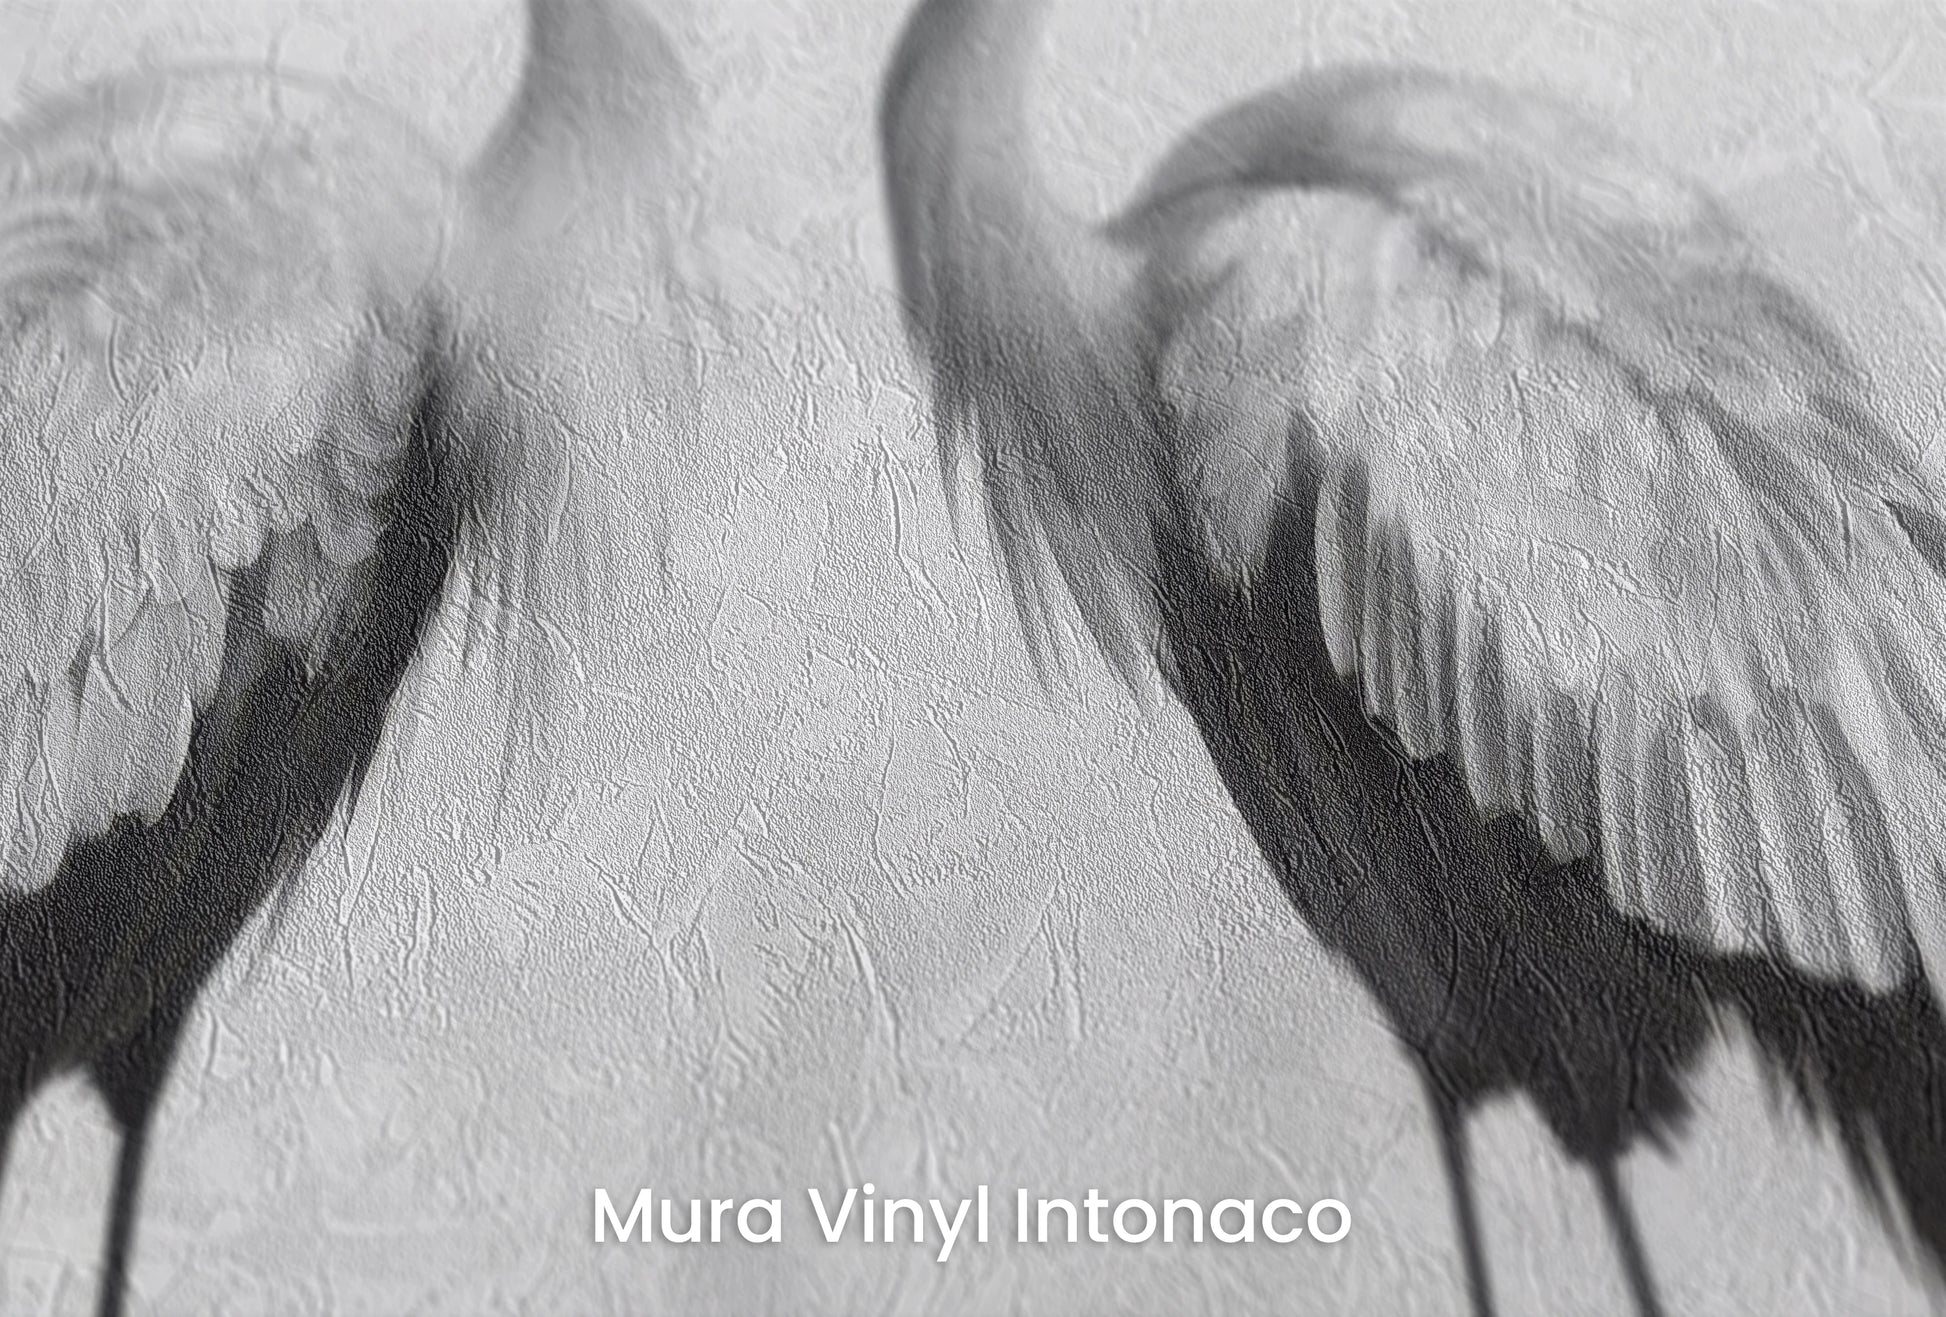 Zbliżenie na artystyczną fototapetę o nazwie Misty Blossom #2 na podłożu Mura Vinyl Intonaco - struktura tartego tynku.